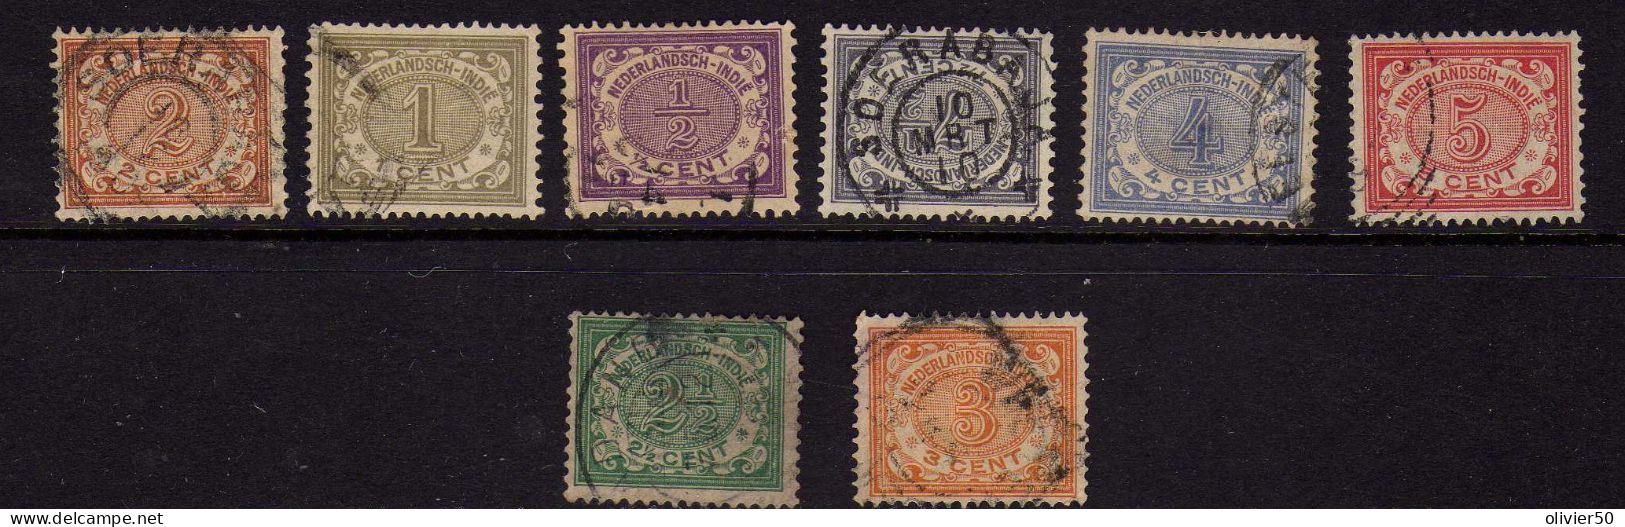 Indes Neerlandaises  (1902-1908) - Chiffres - Obliteres - Niederländisch-Indien